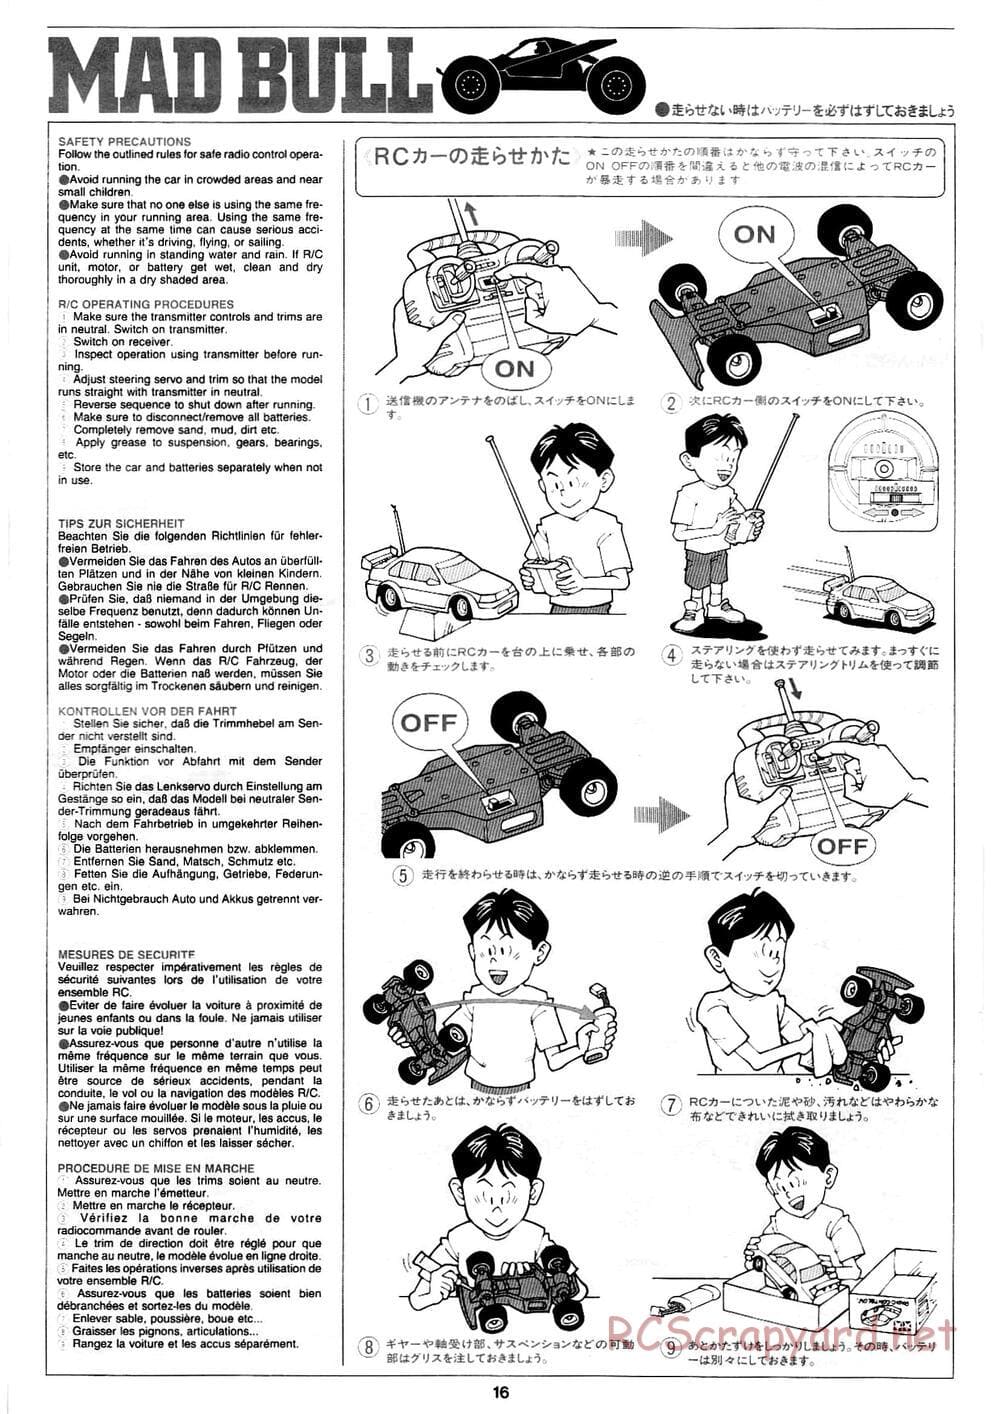 Tamiya - Mad Bull Chassis - Manual - Page 16